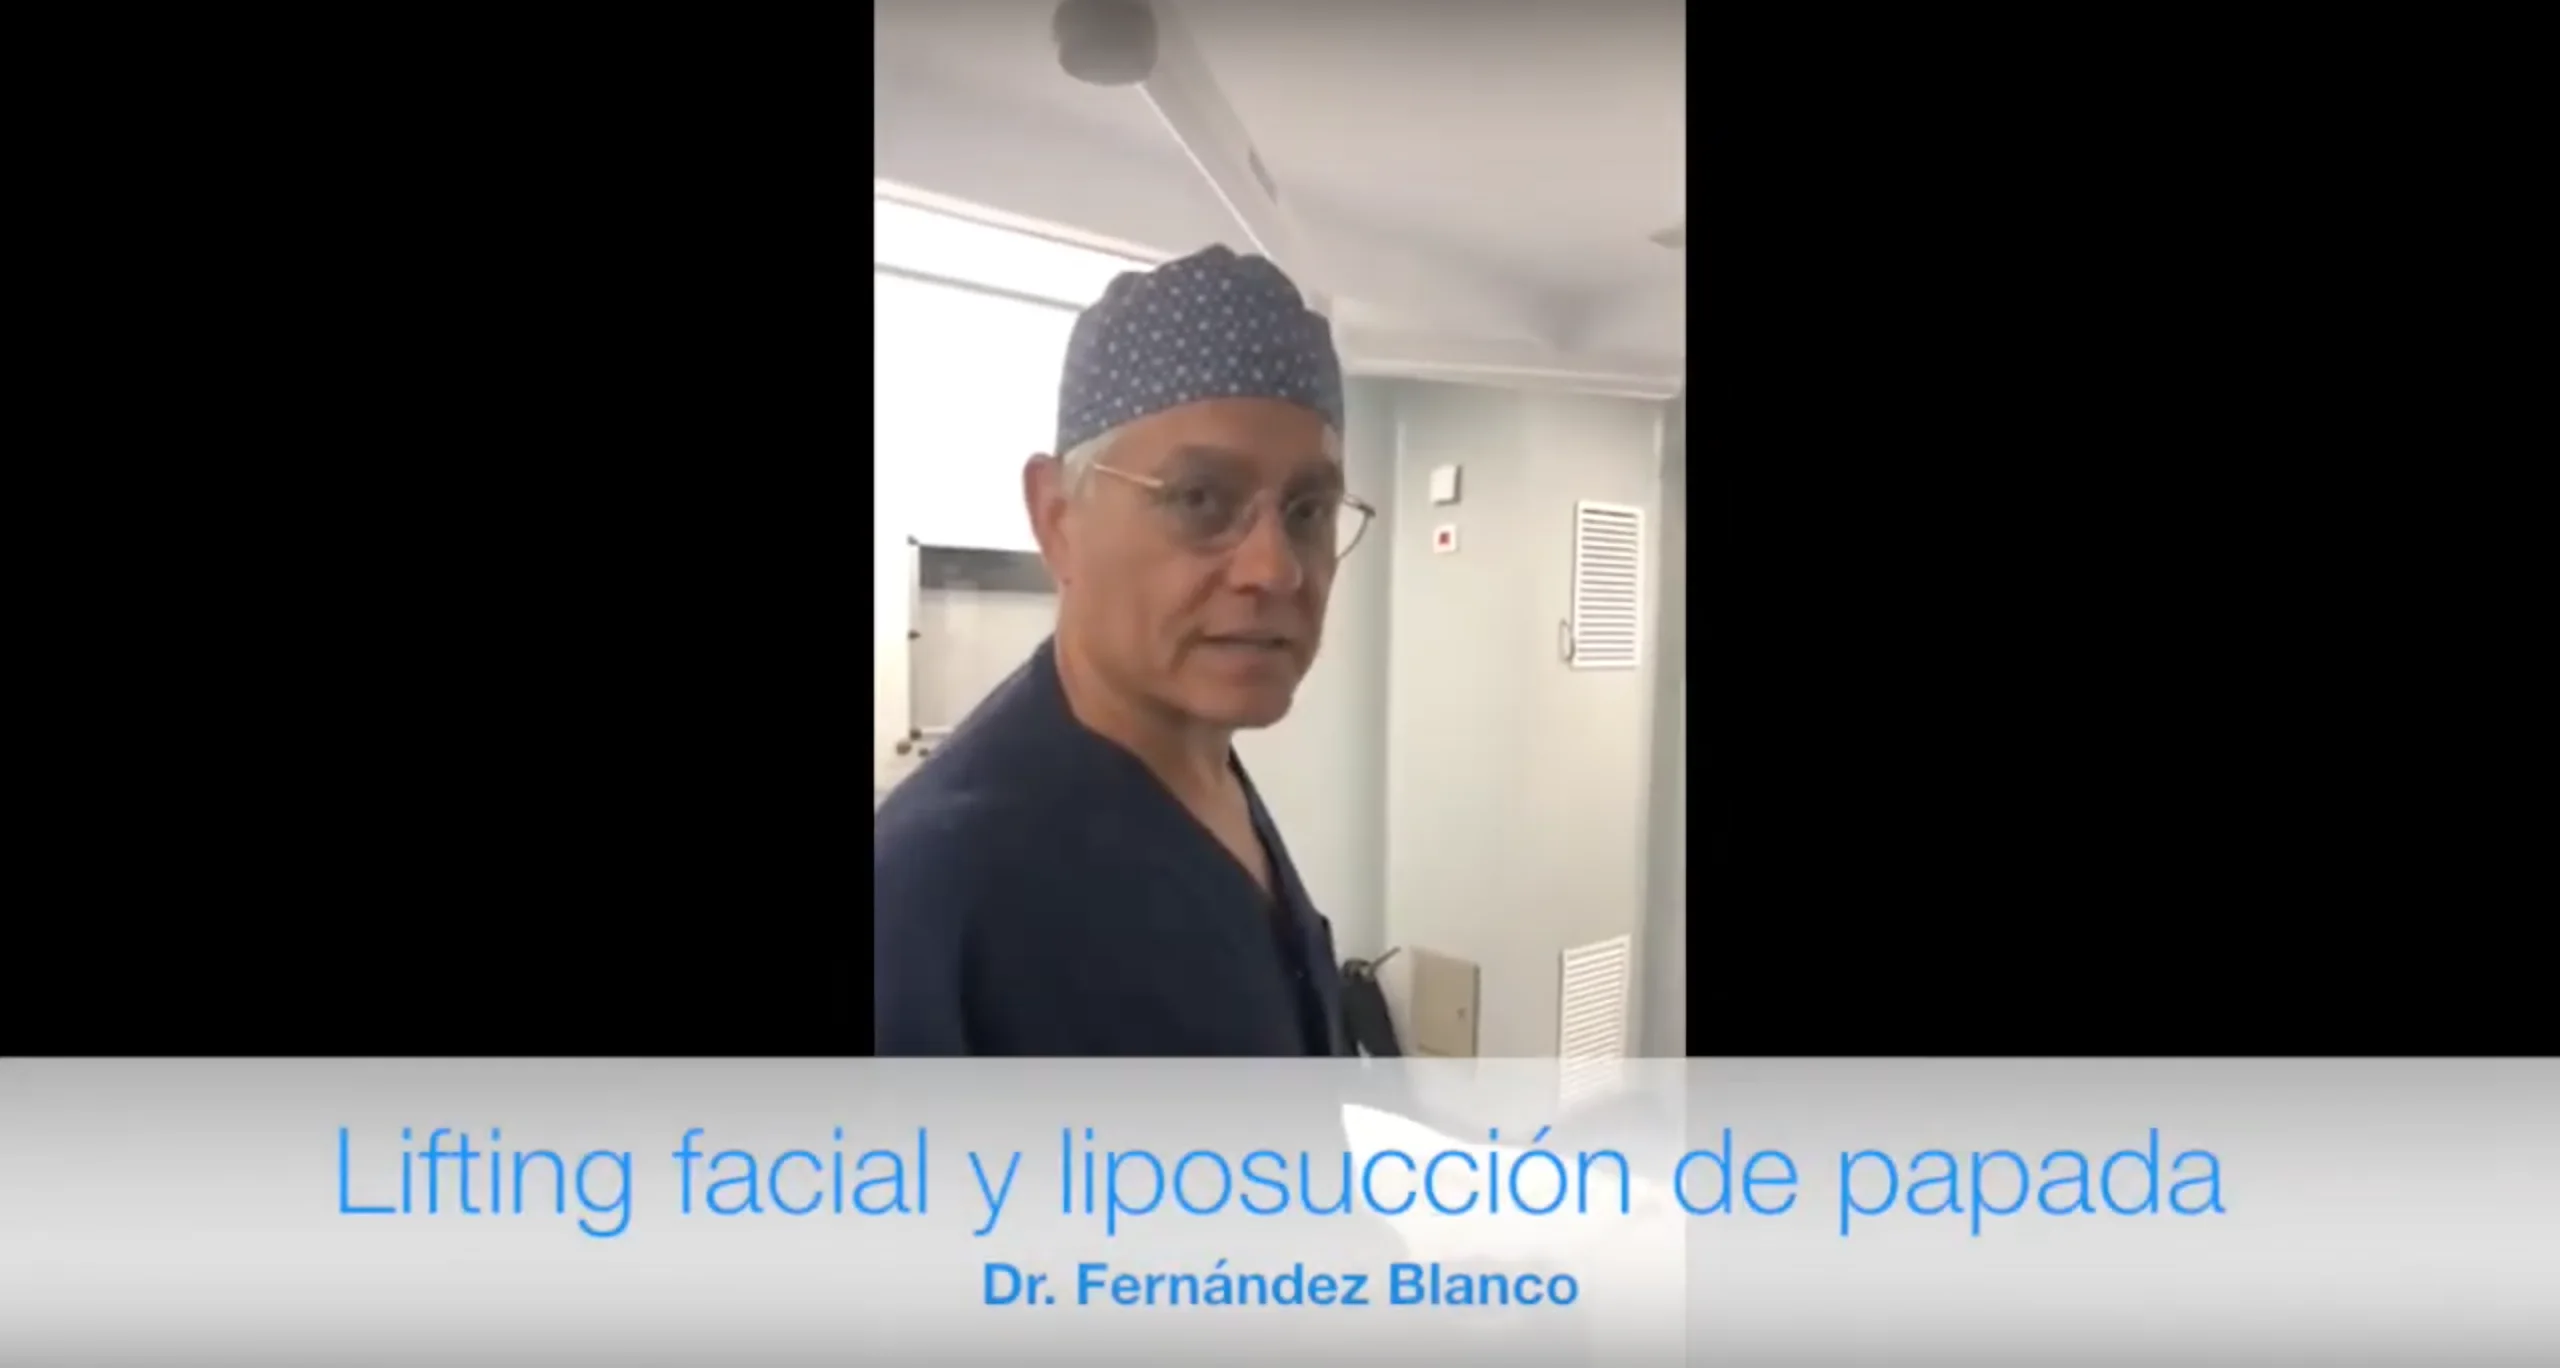 Videoblog sobre cómo lucen los resultados de un lifting facial con liposucción de papada